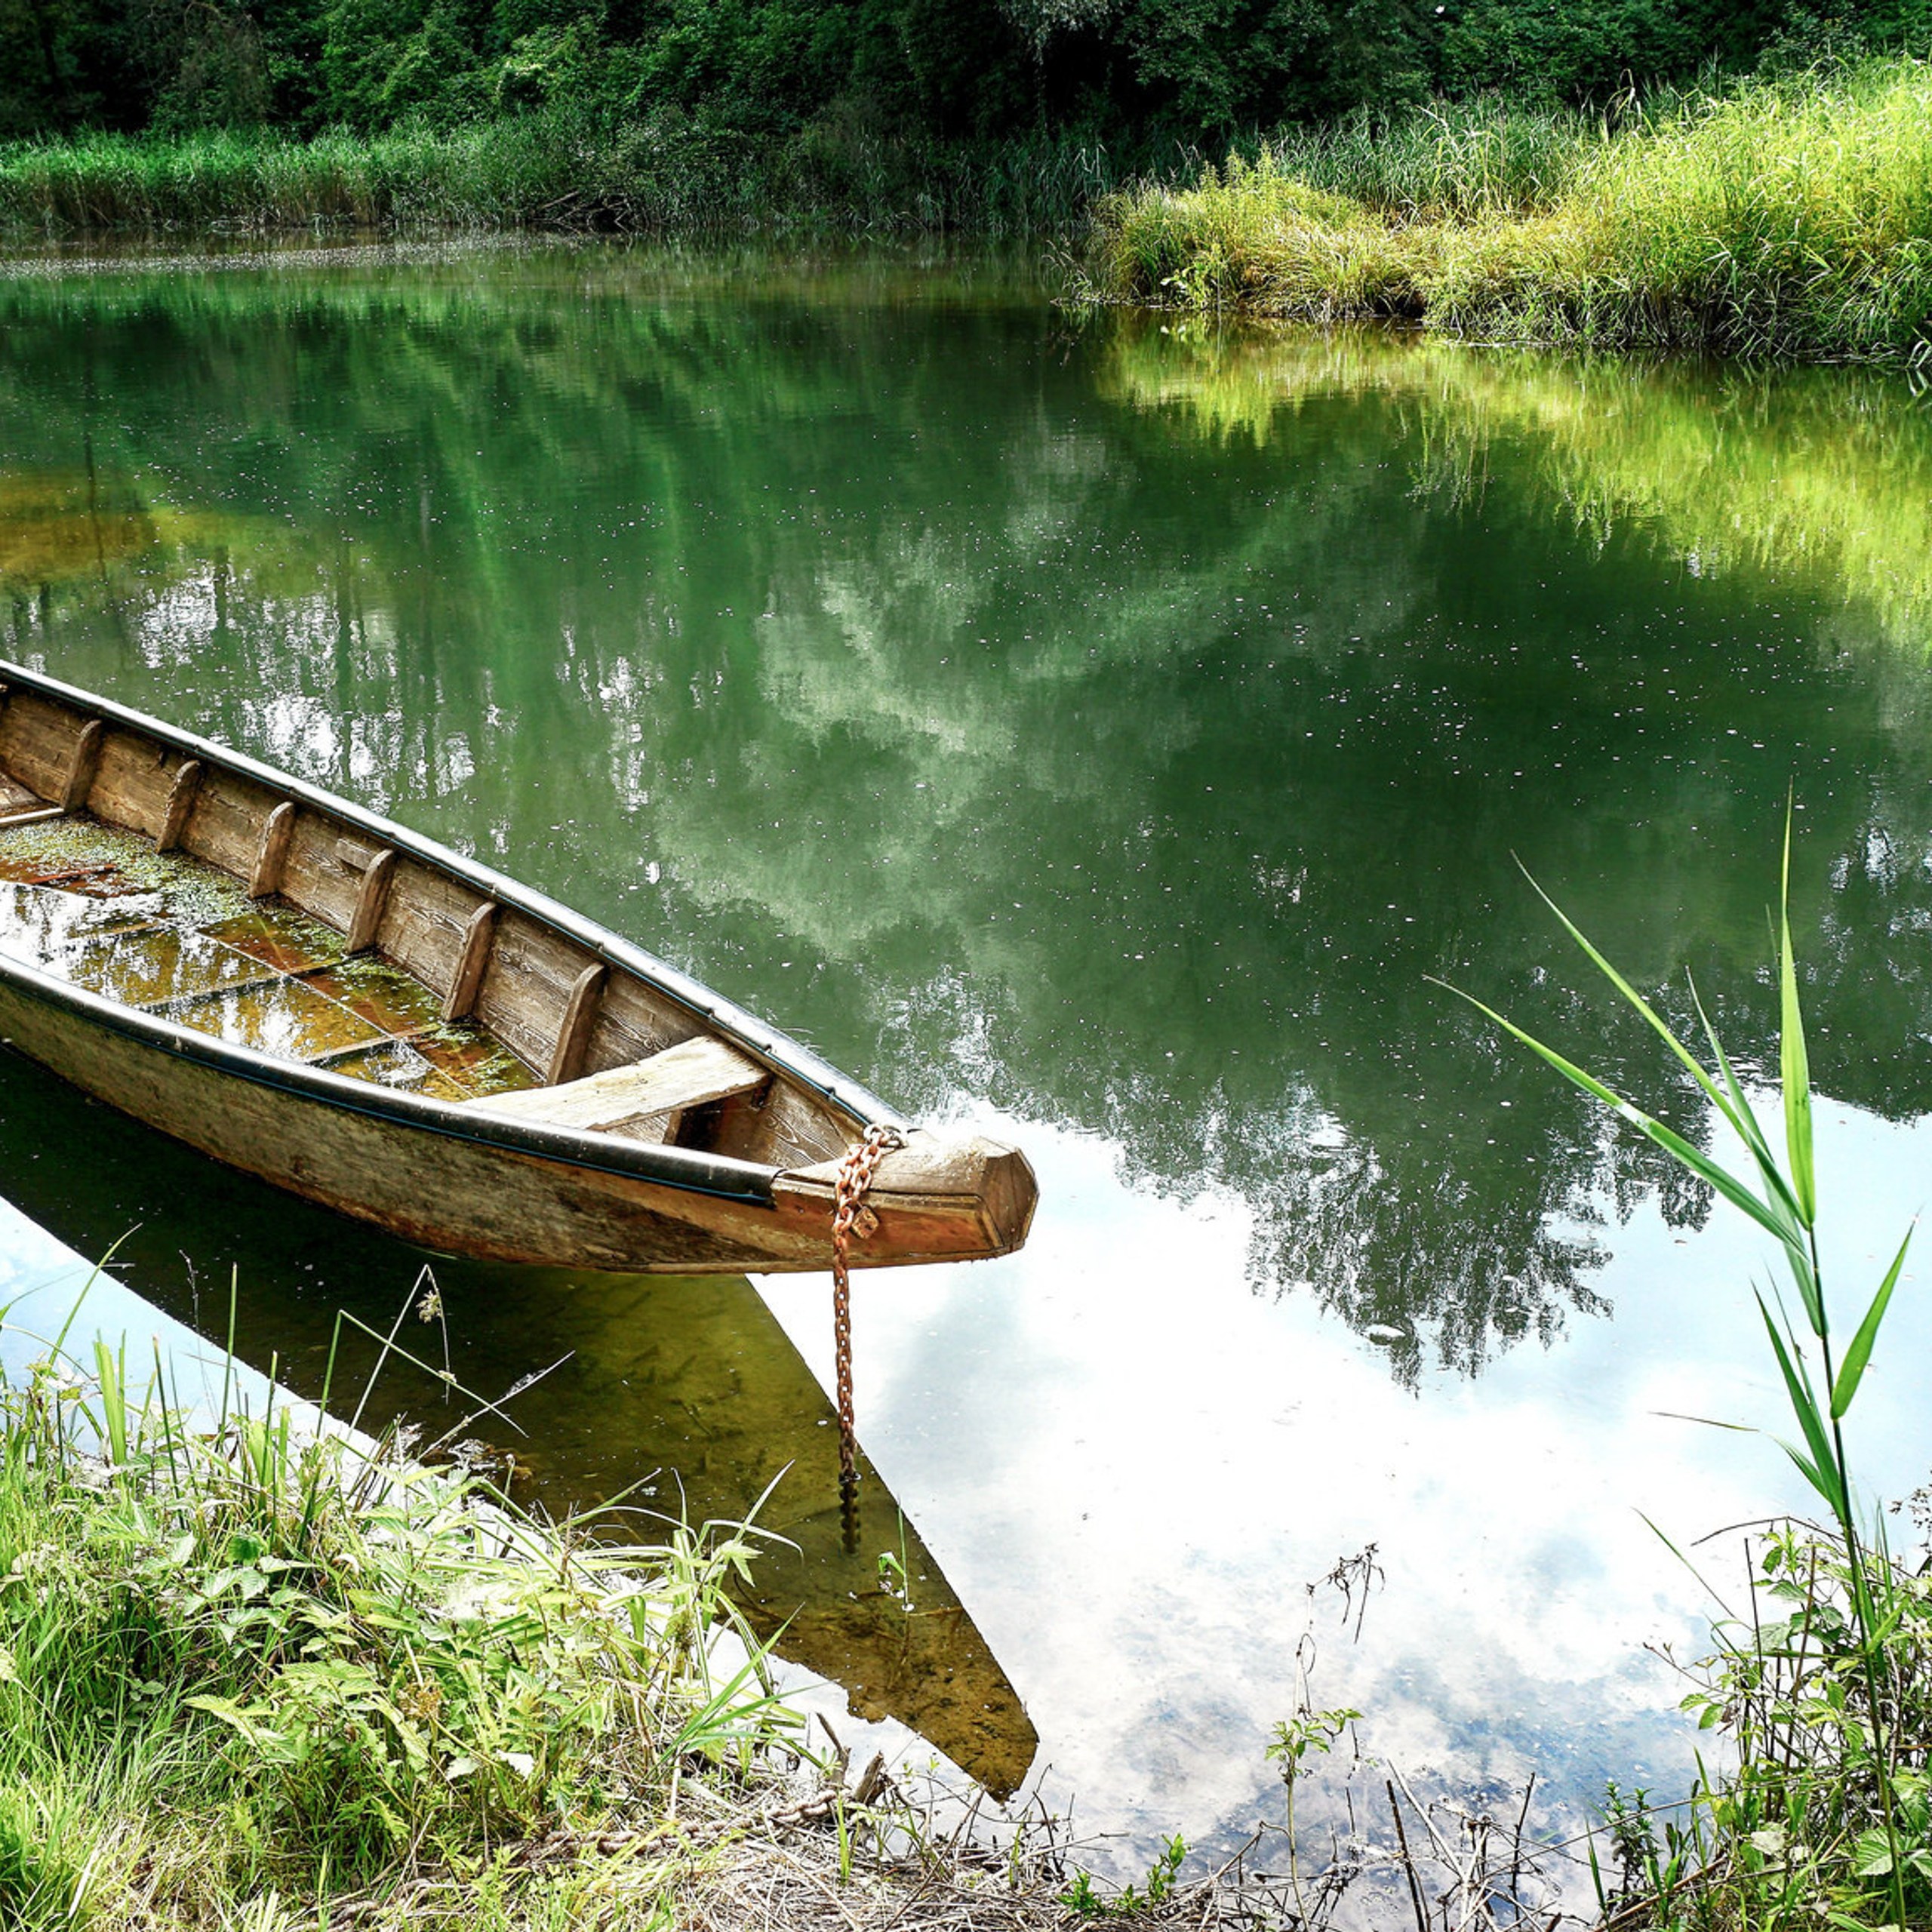 Обои на телефон река. Лодка на реке. Лодка на пруду. Лодка на речке. Речной пейзаж.